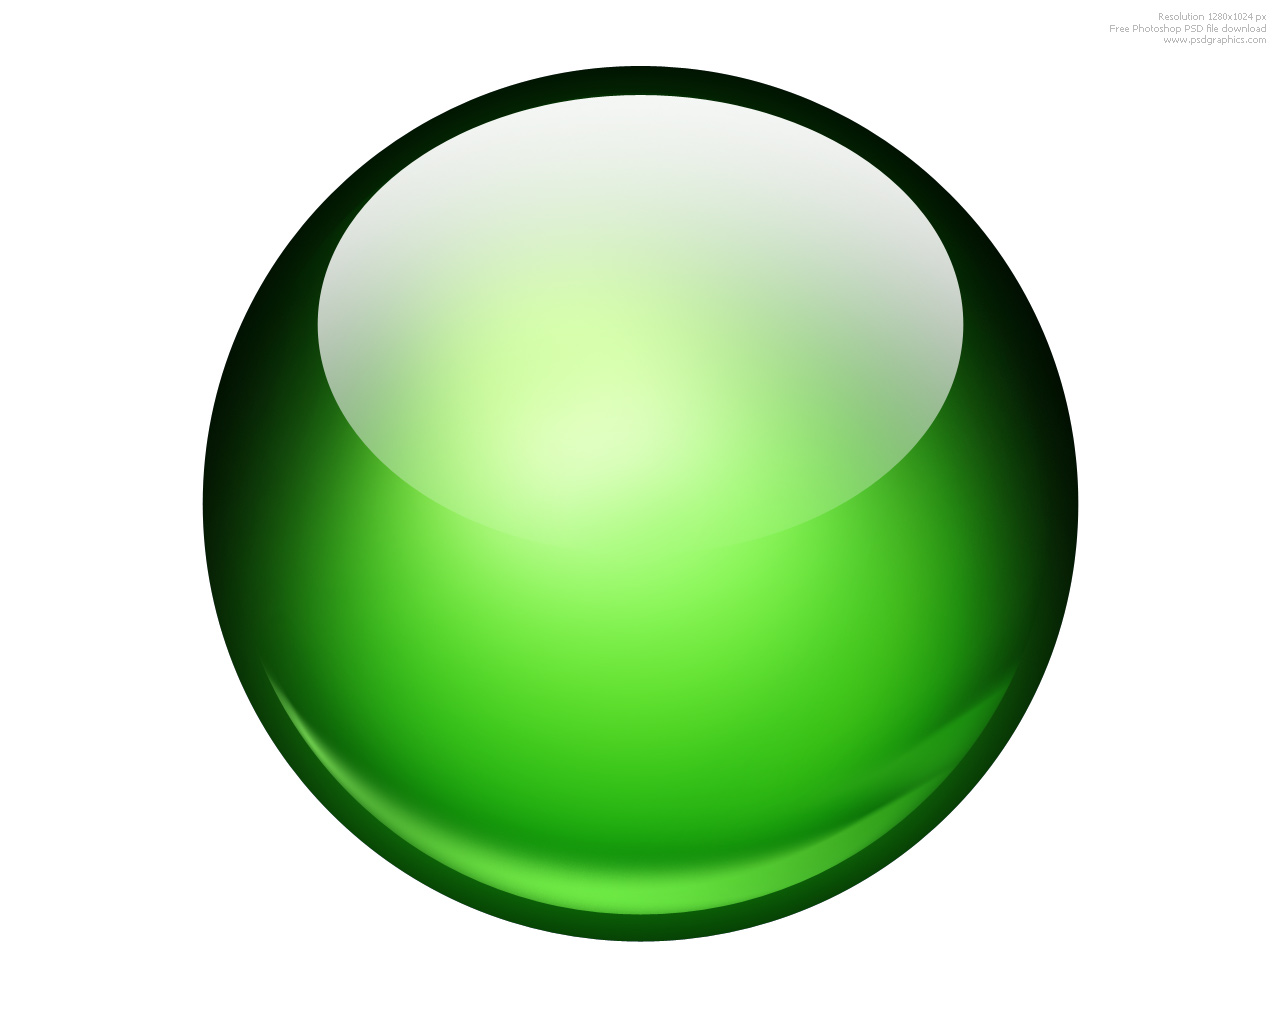 Green Ball Icon